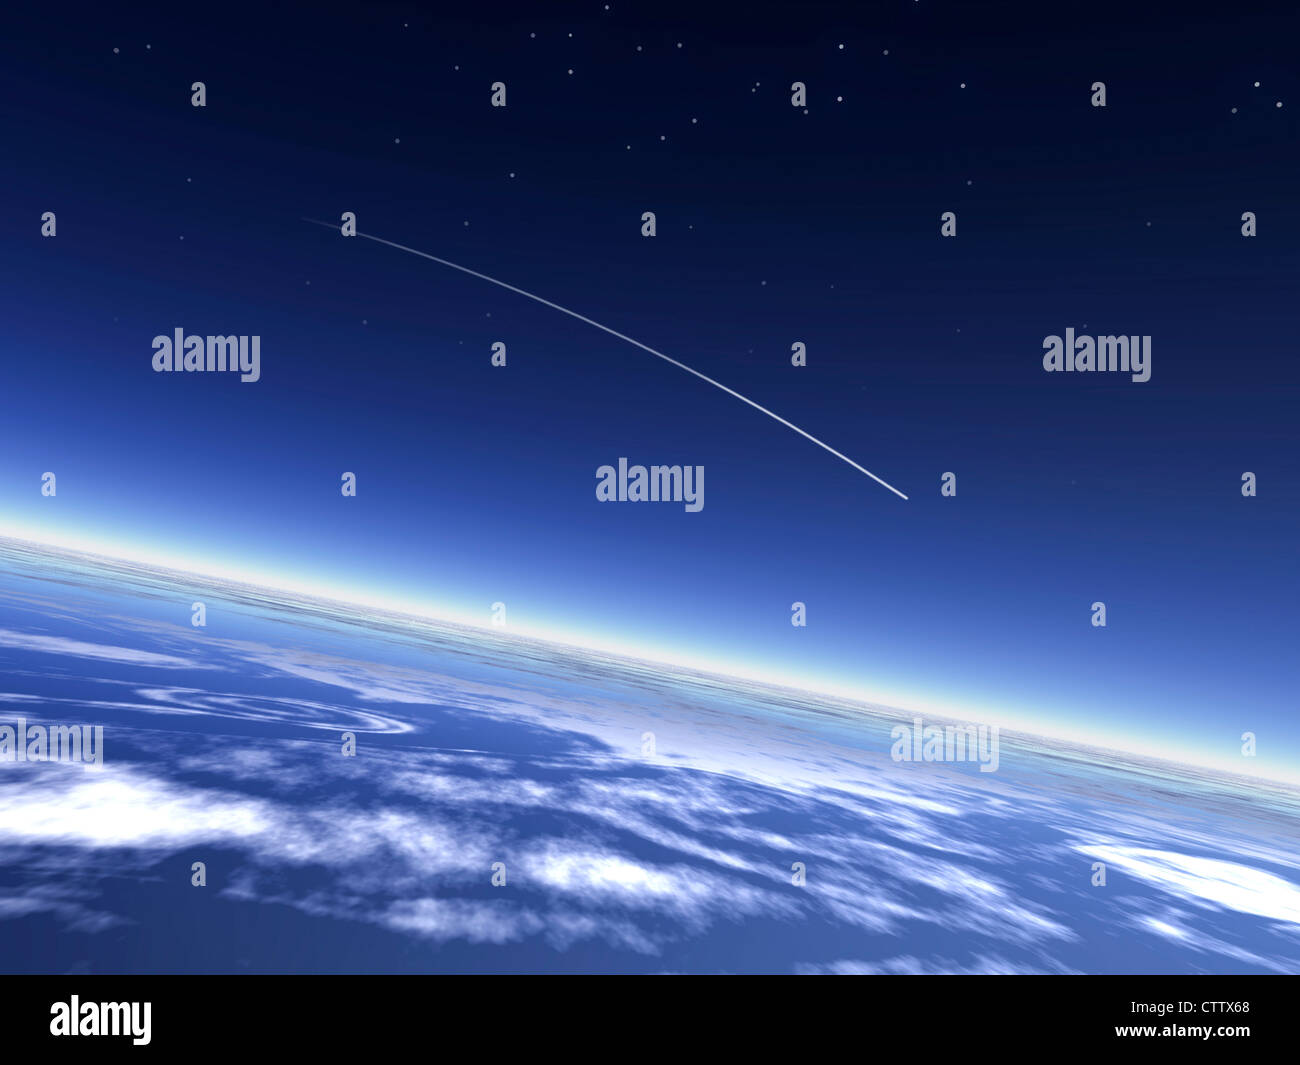 falling star in the atmosphere - Sternschnuppe über der Erde vom All aus gesehen Stock Photo